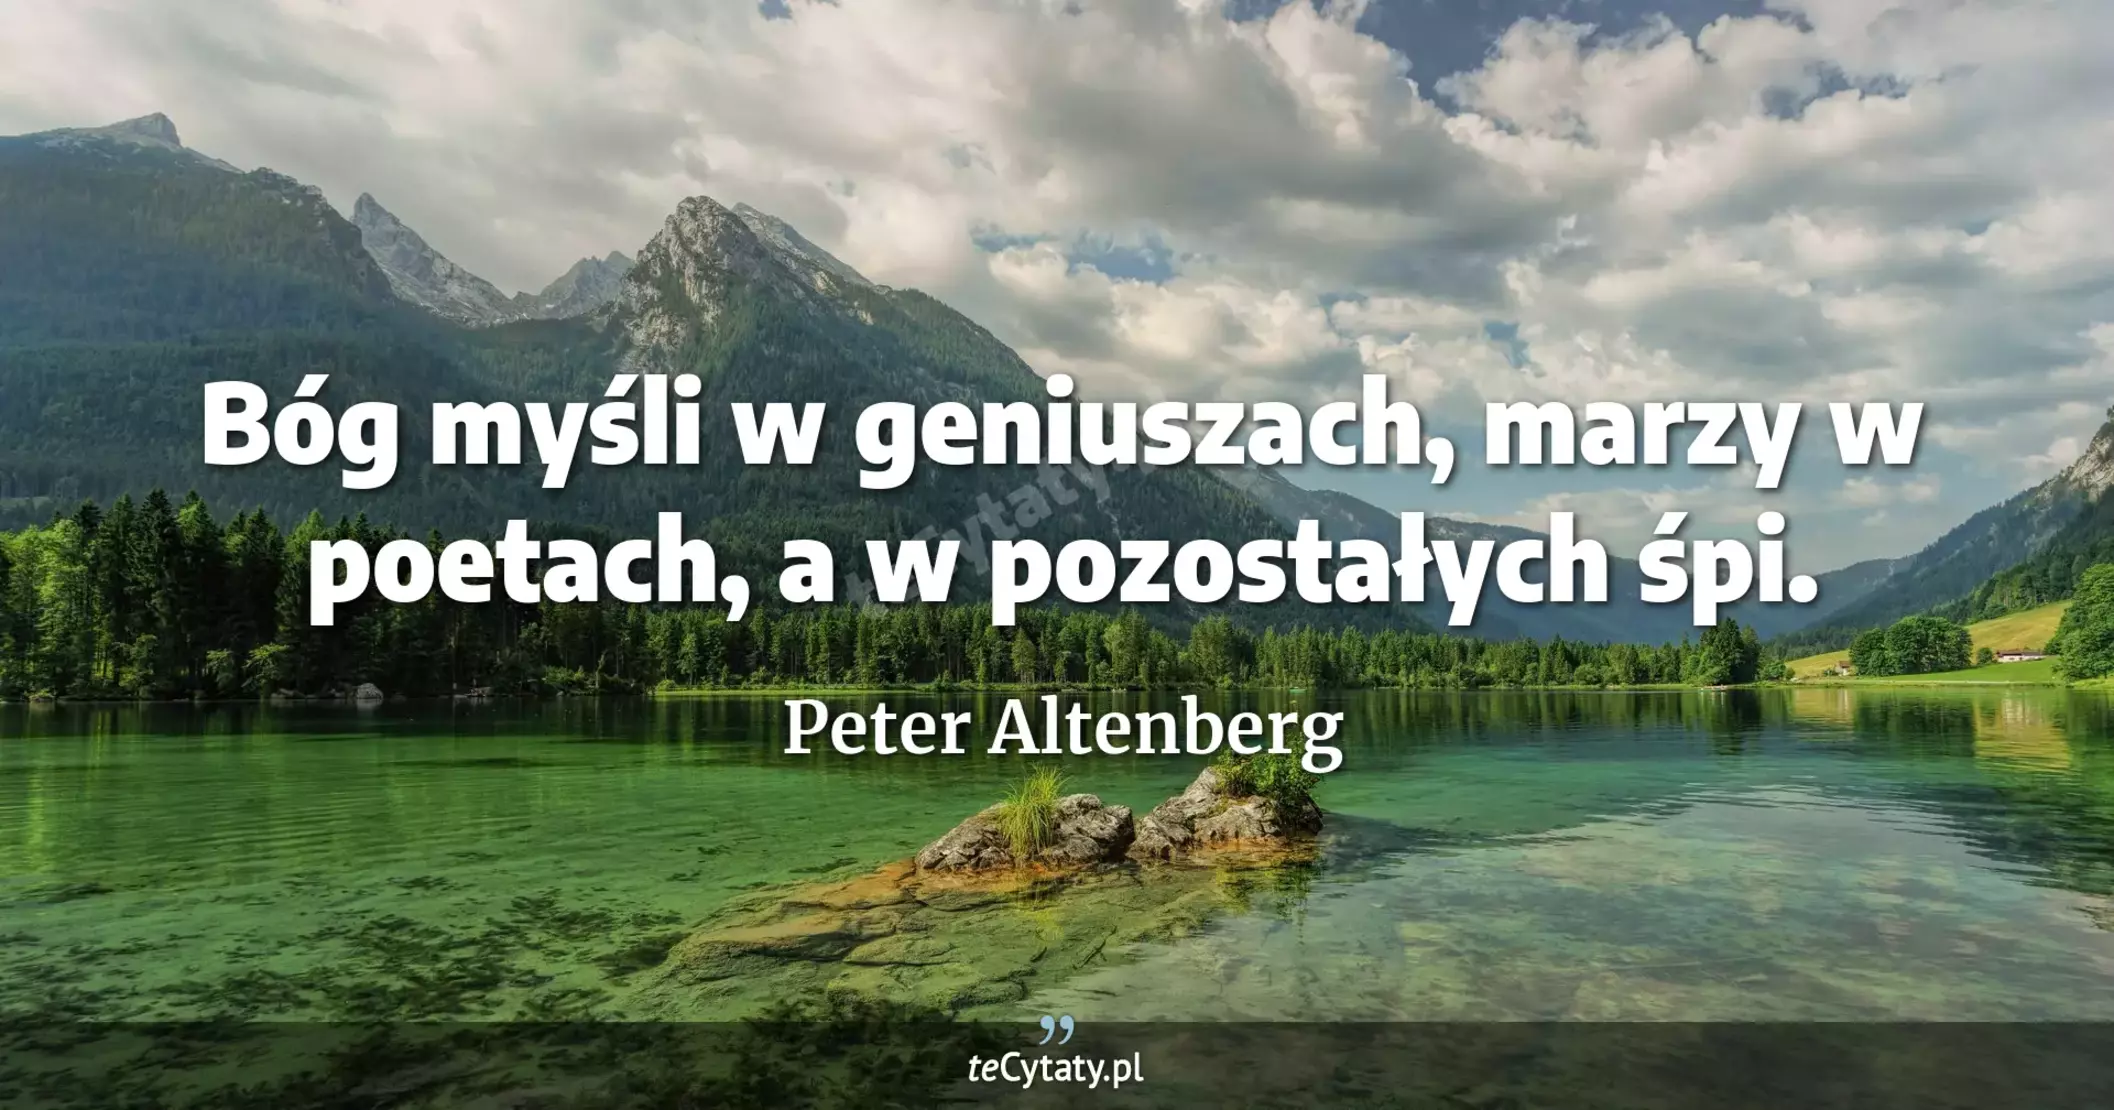 Bóg myśli w geniuszach, marzy w poetach, a w pozostałych śpi. - Peter Altenberg